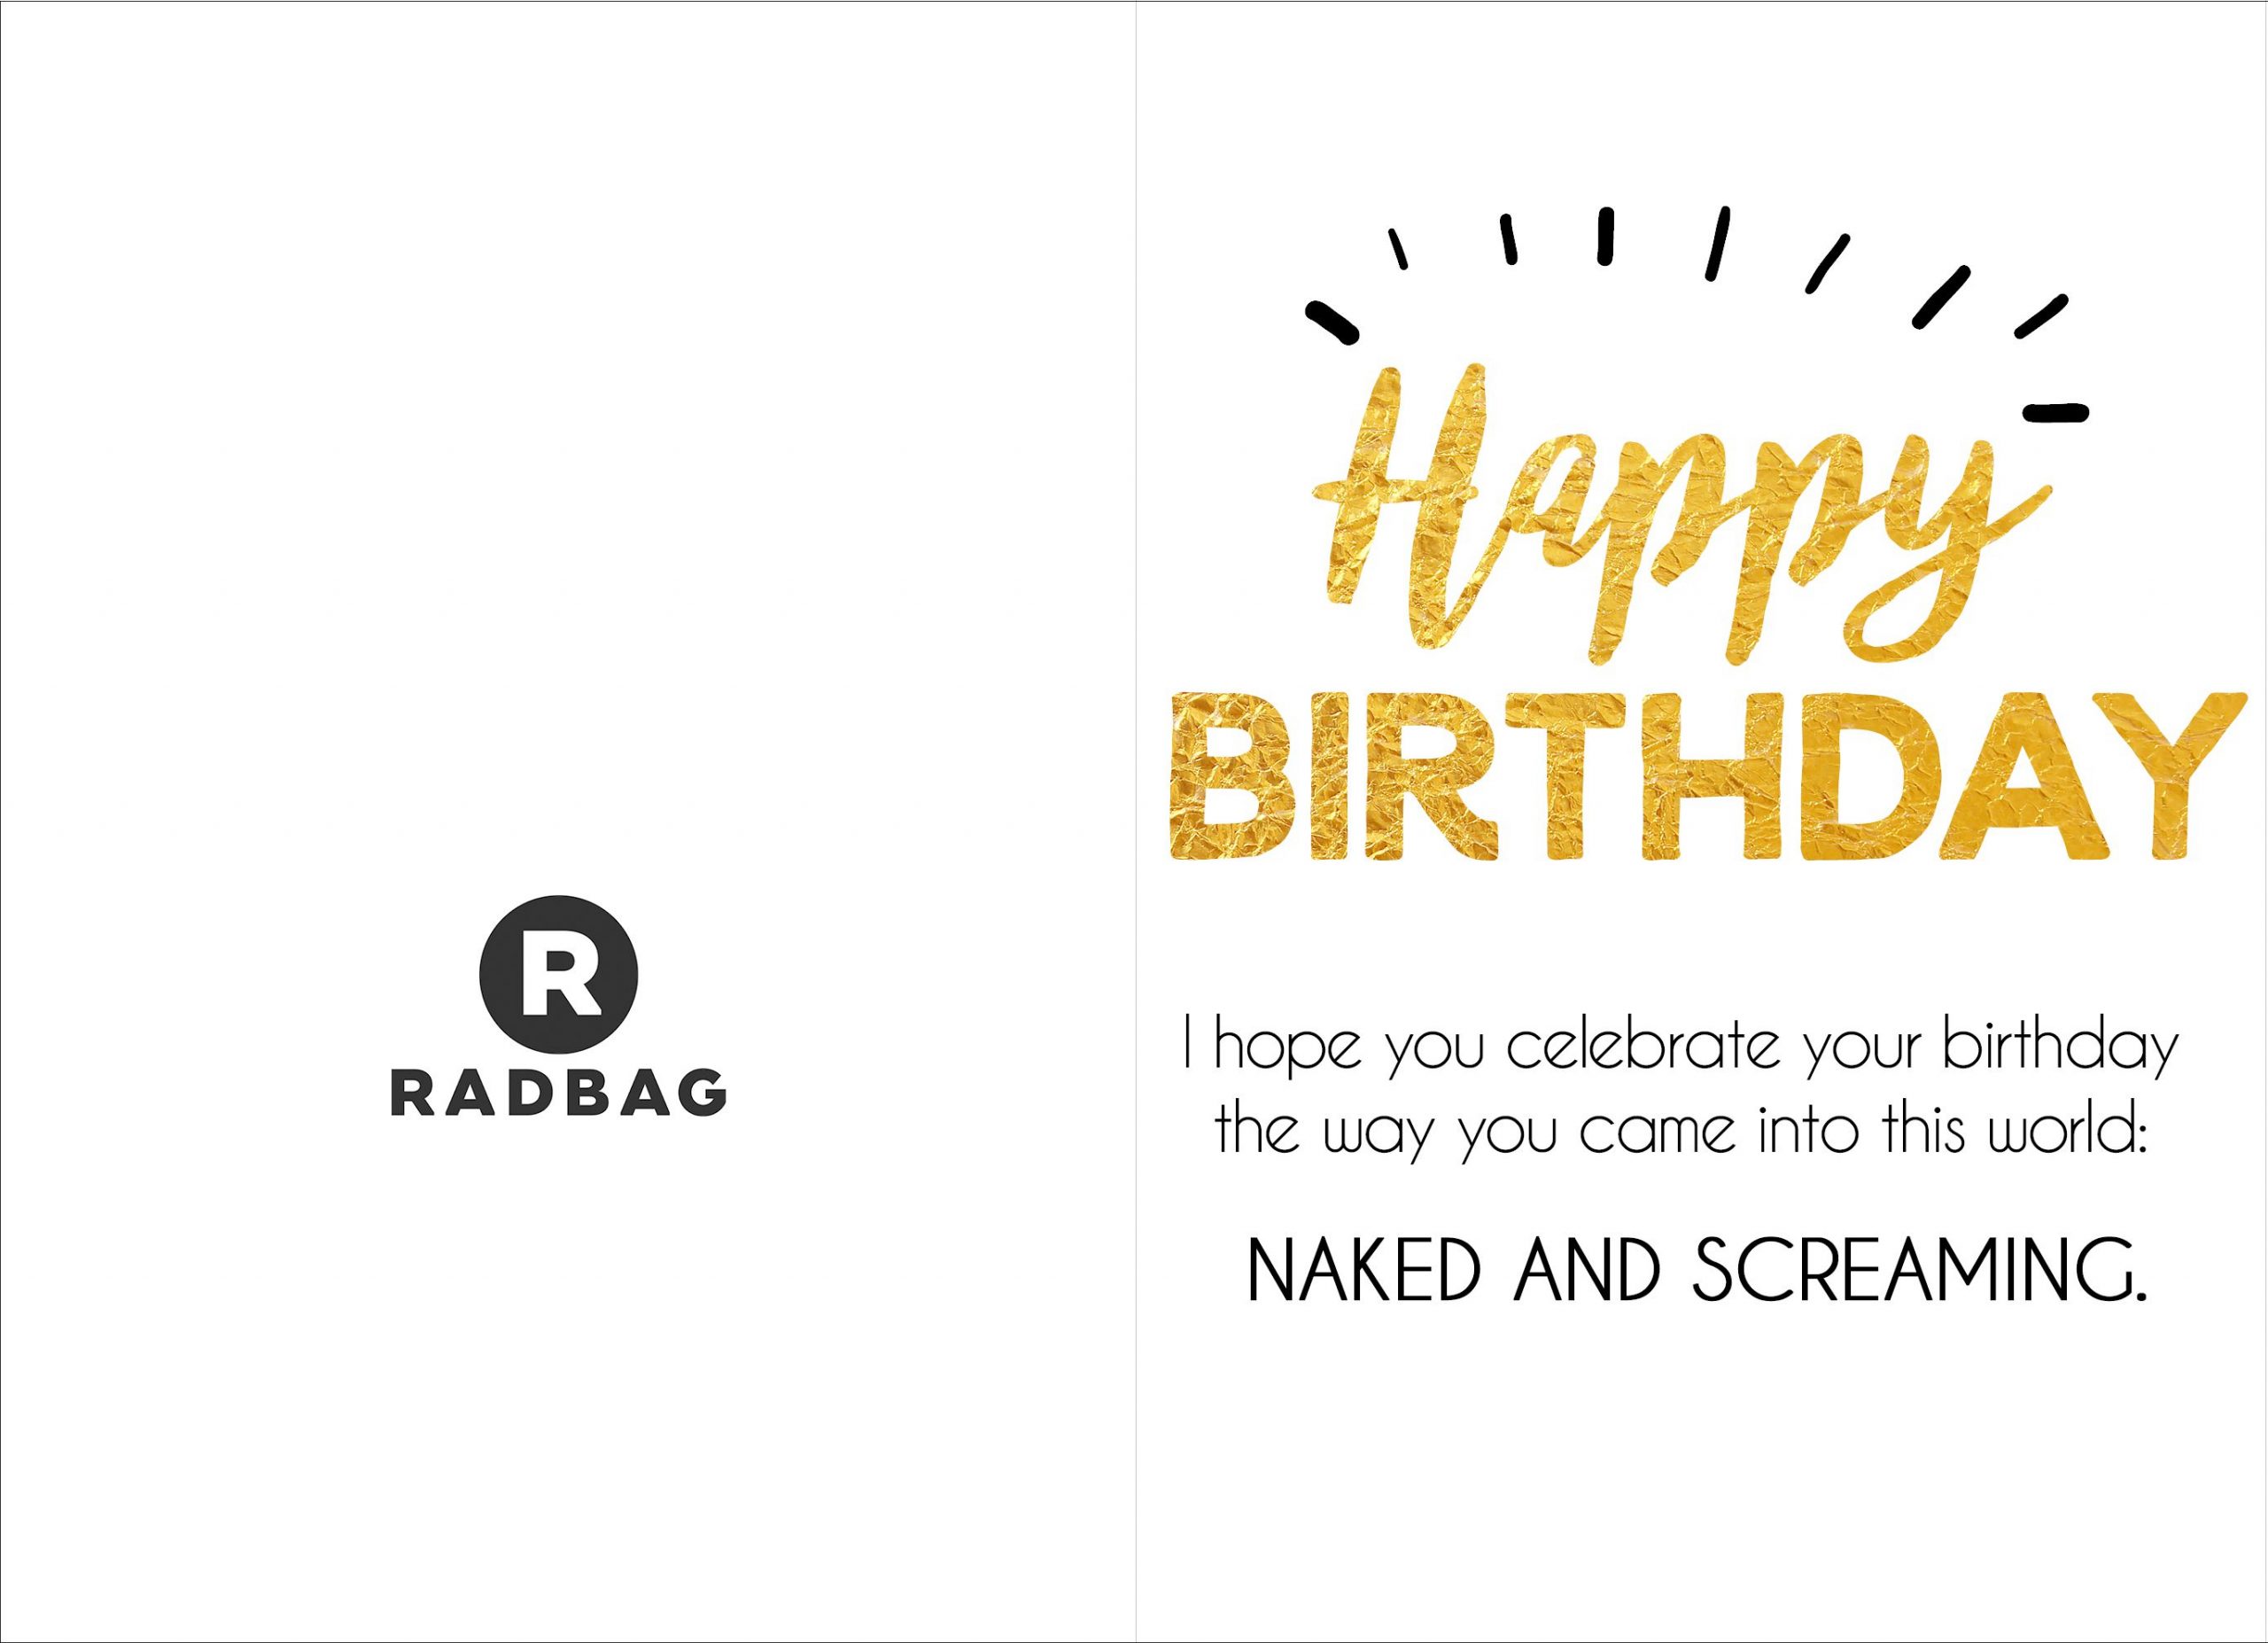 10 Coole Geburtstagskarten Zum Ausdrucken verwandt mit Geburtstagskarte Ausdrucken Online